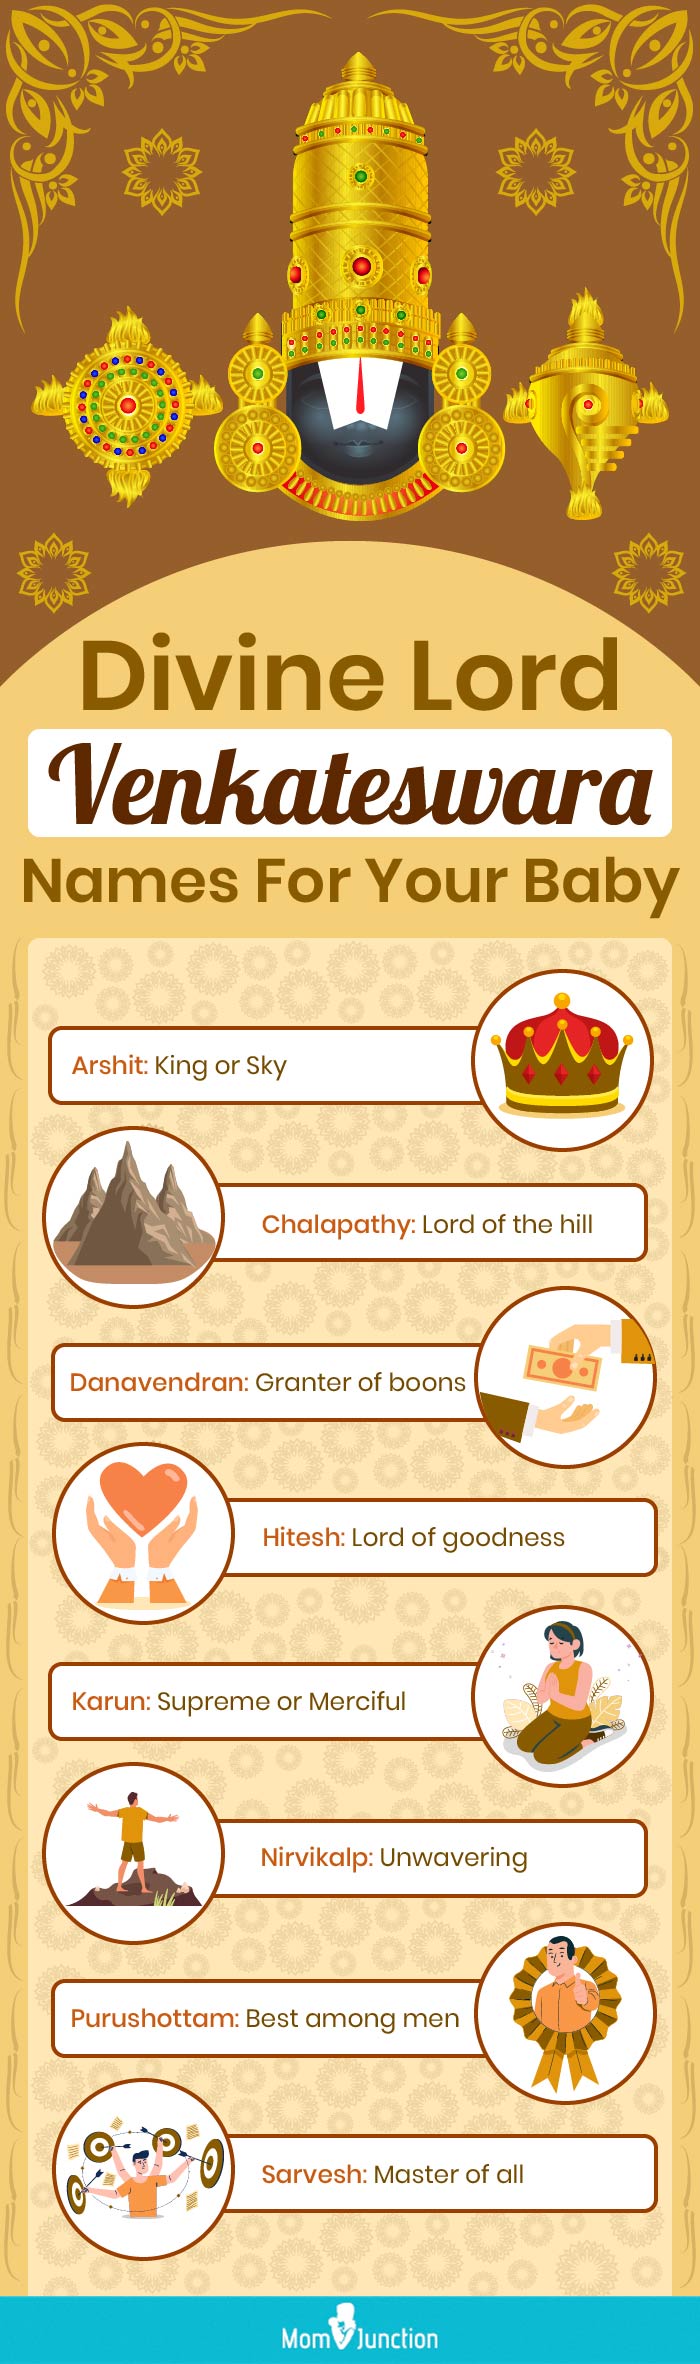 lord venkateswara baby names [infographic]